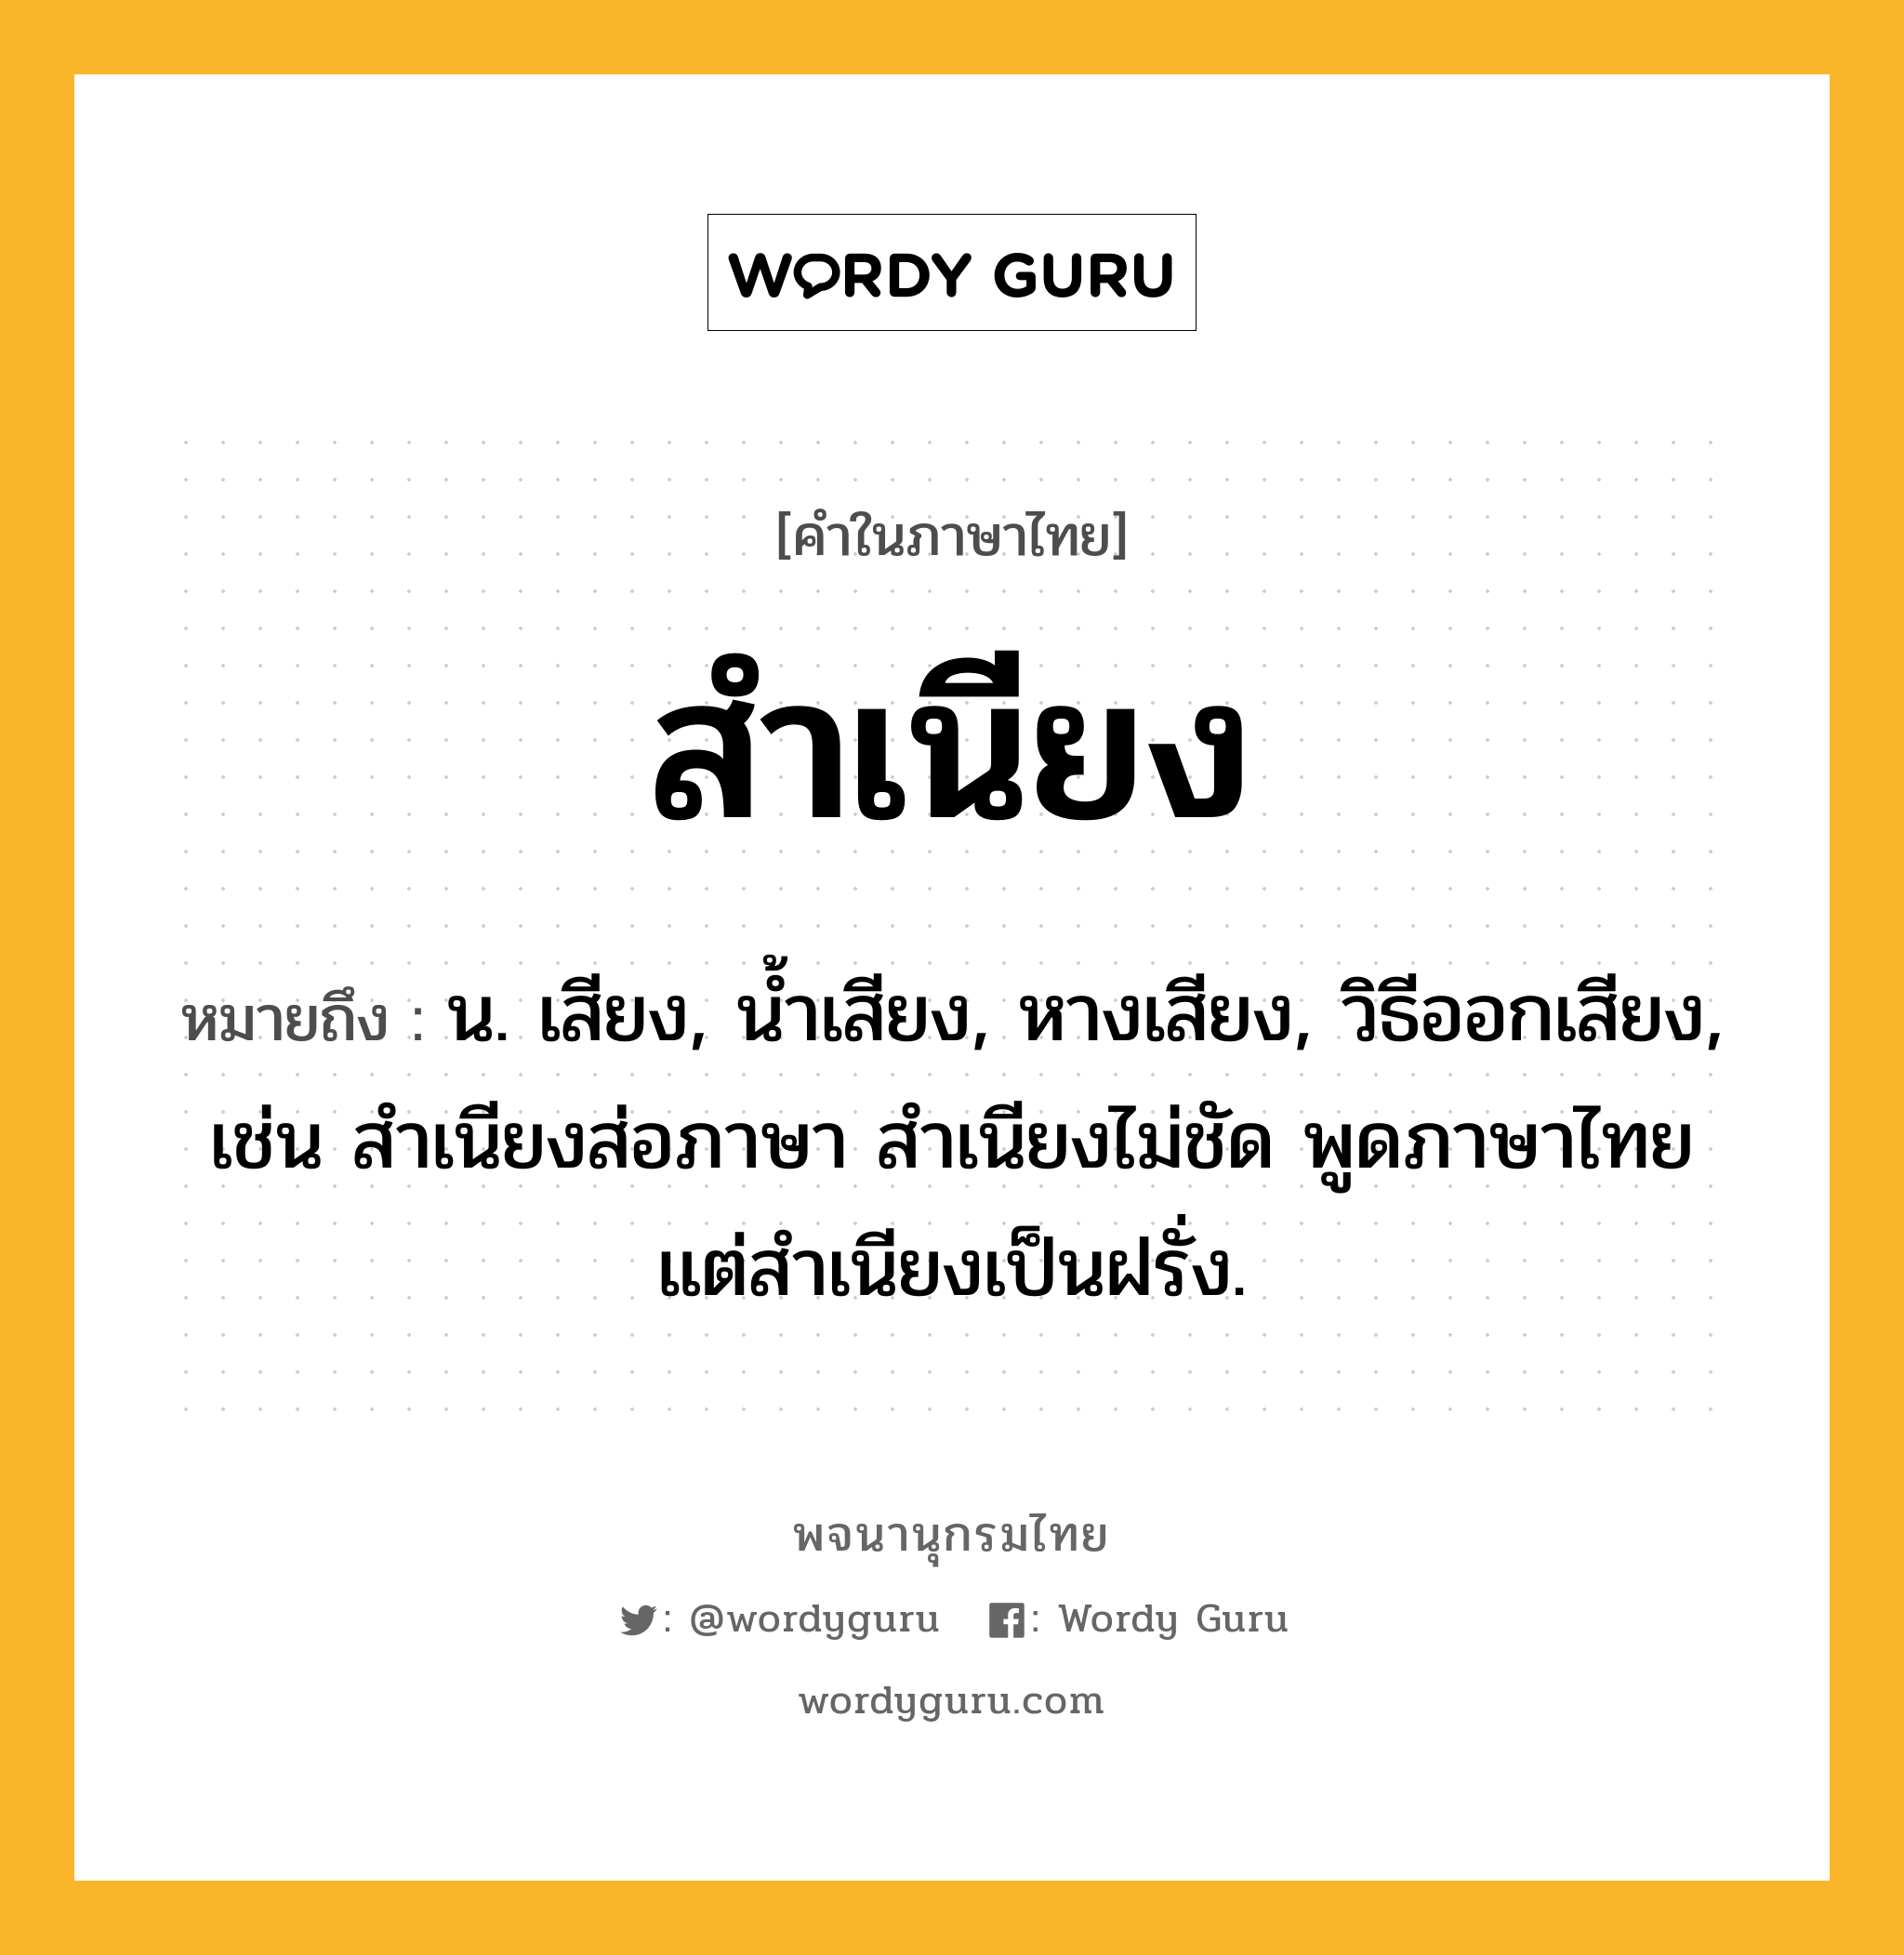 สำเนียง หมายถึงอะไร?, คำในภาษาไทย สำเนียง หมายถึง น. เสียง, นํ้าเสียง, หางเสียง, วิธีออกเสียง, เช่น สําเนียงส่อภาษา สําเนียงไม่ชัด พูดภาษาไทยแต่สำเนียงเป็นฝรั่ง.